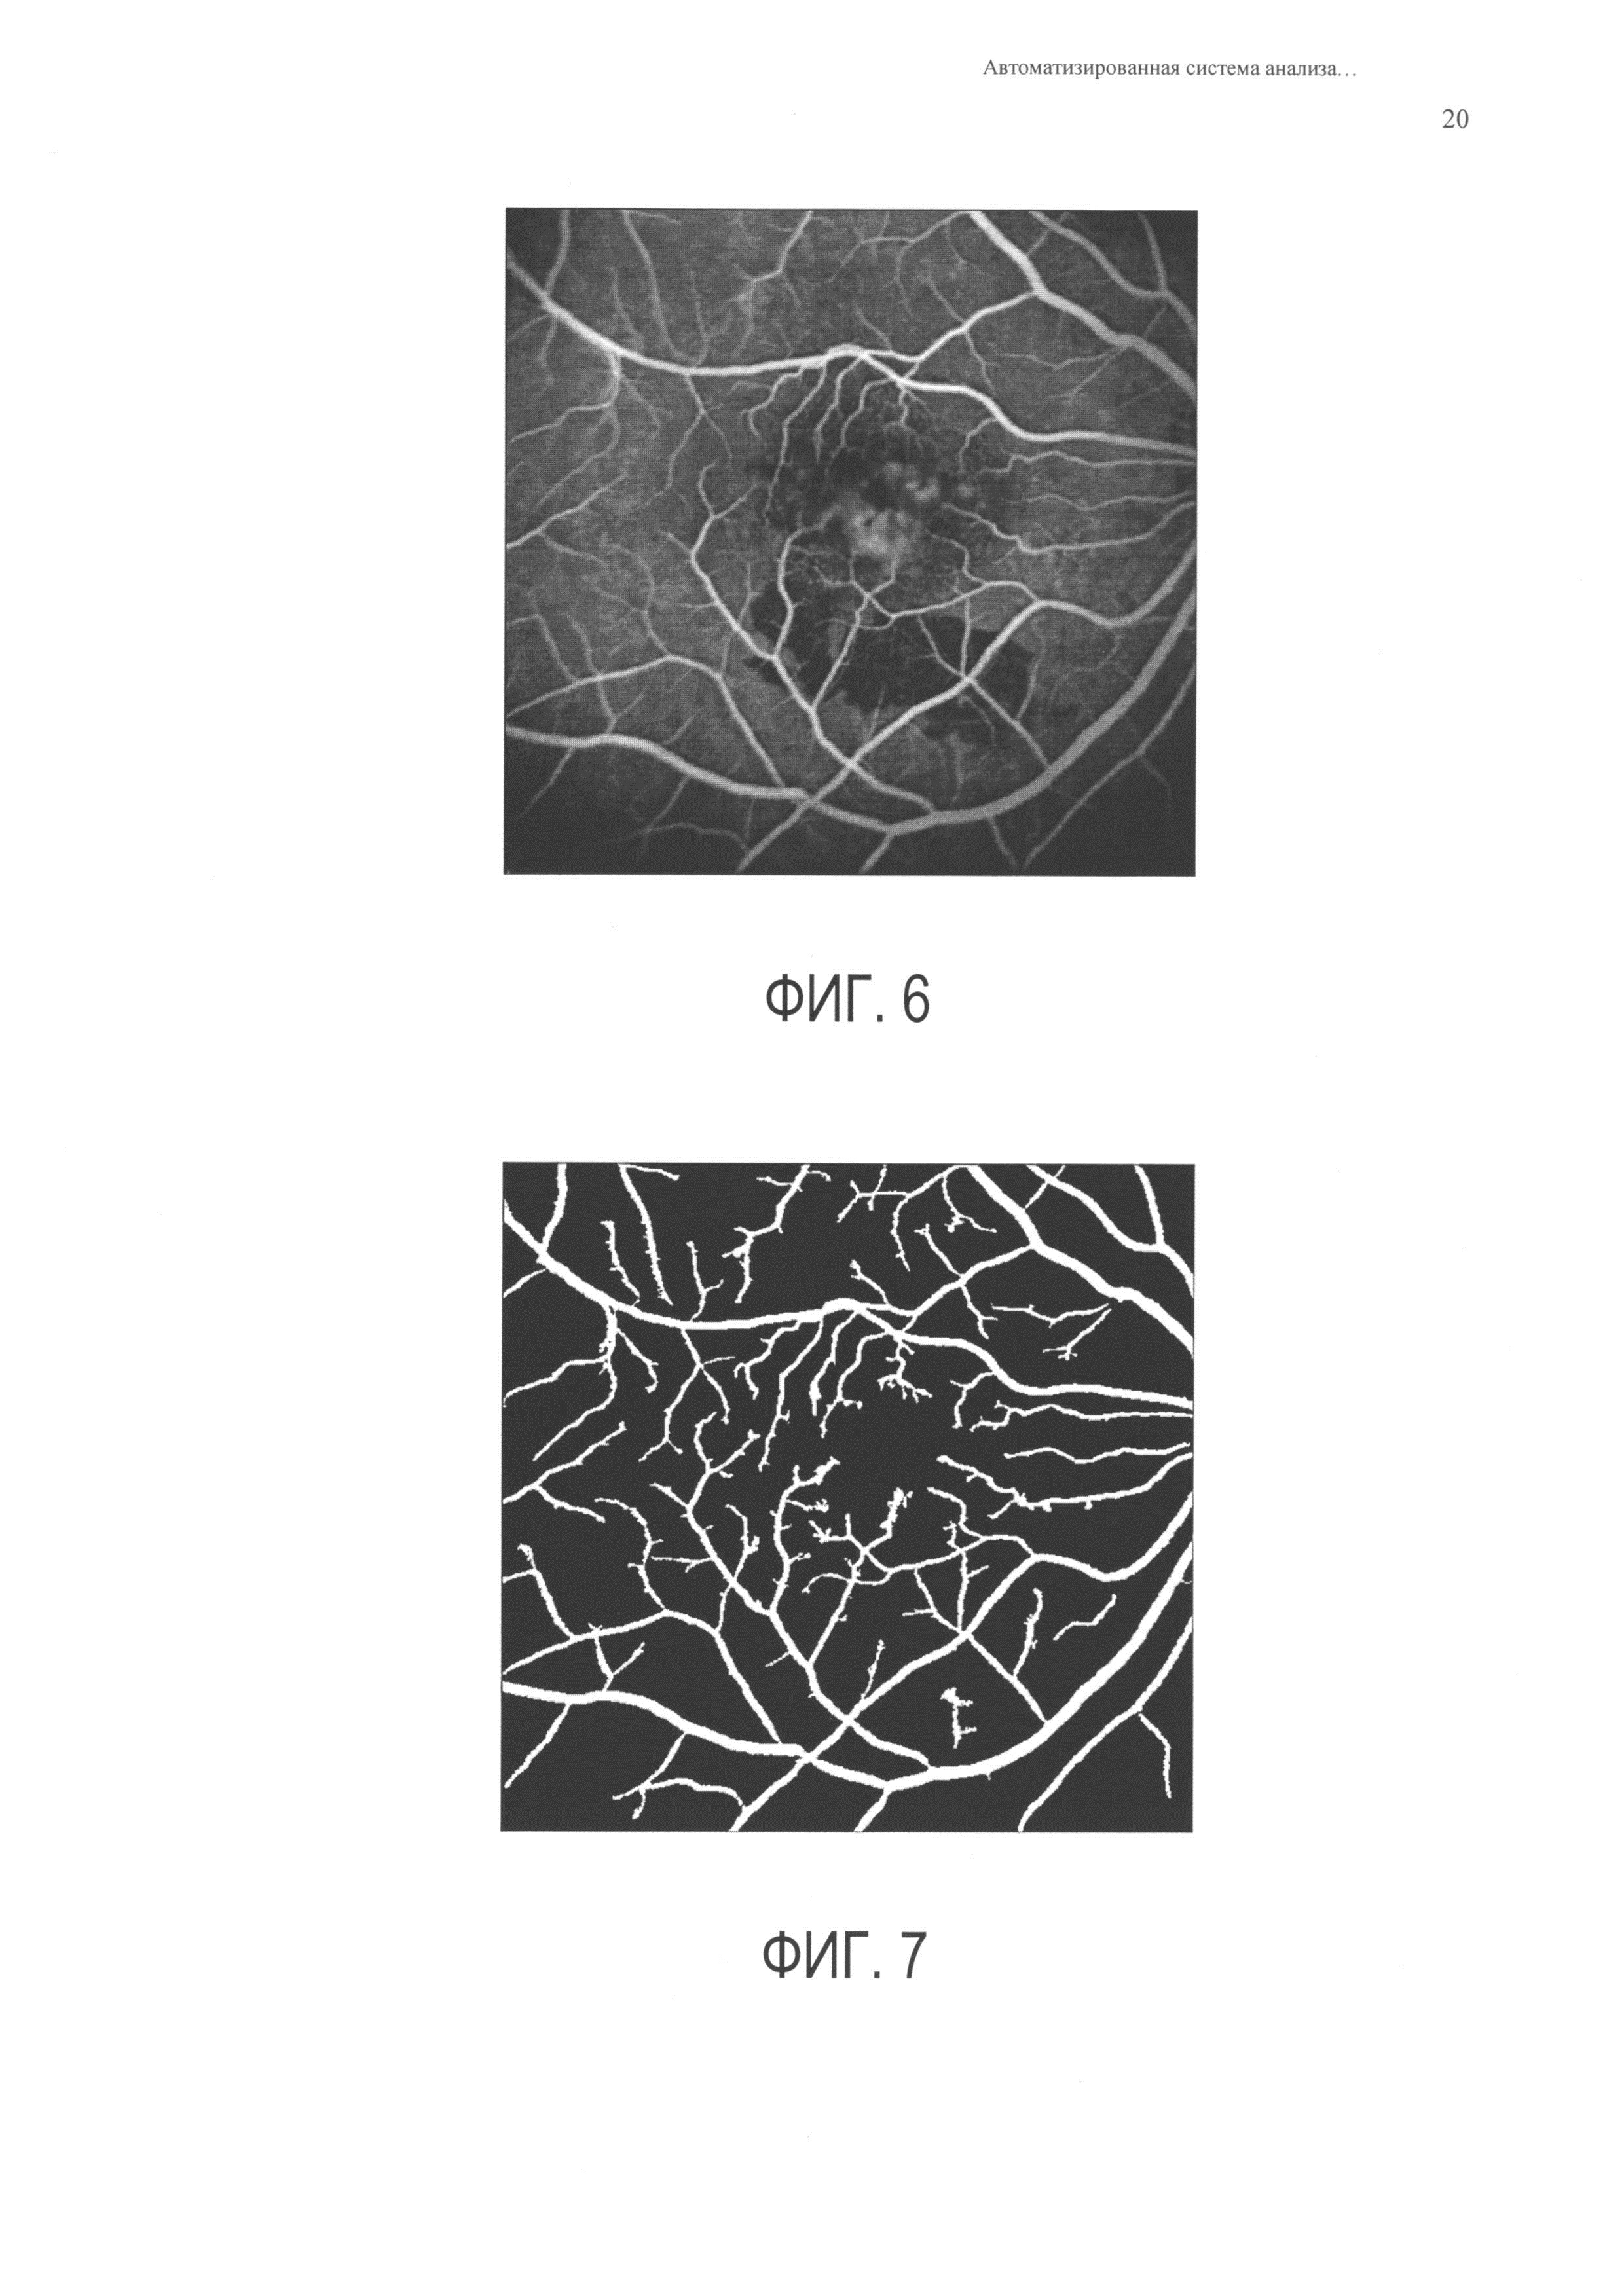 Автоматизированная система анализа ангиографических изображений глазного дна человека